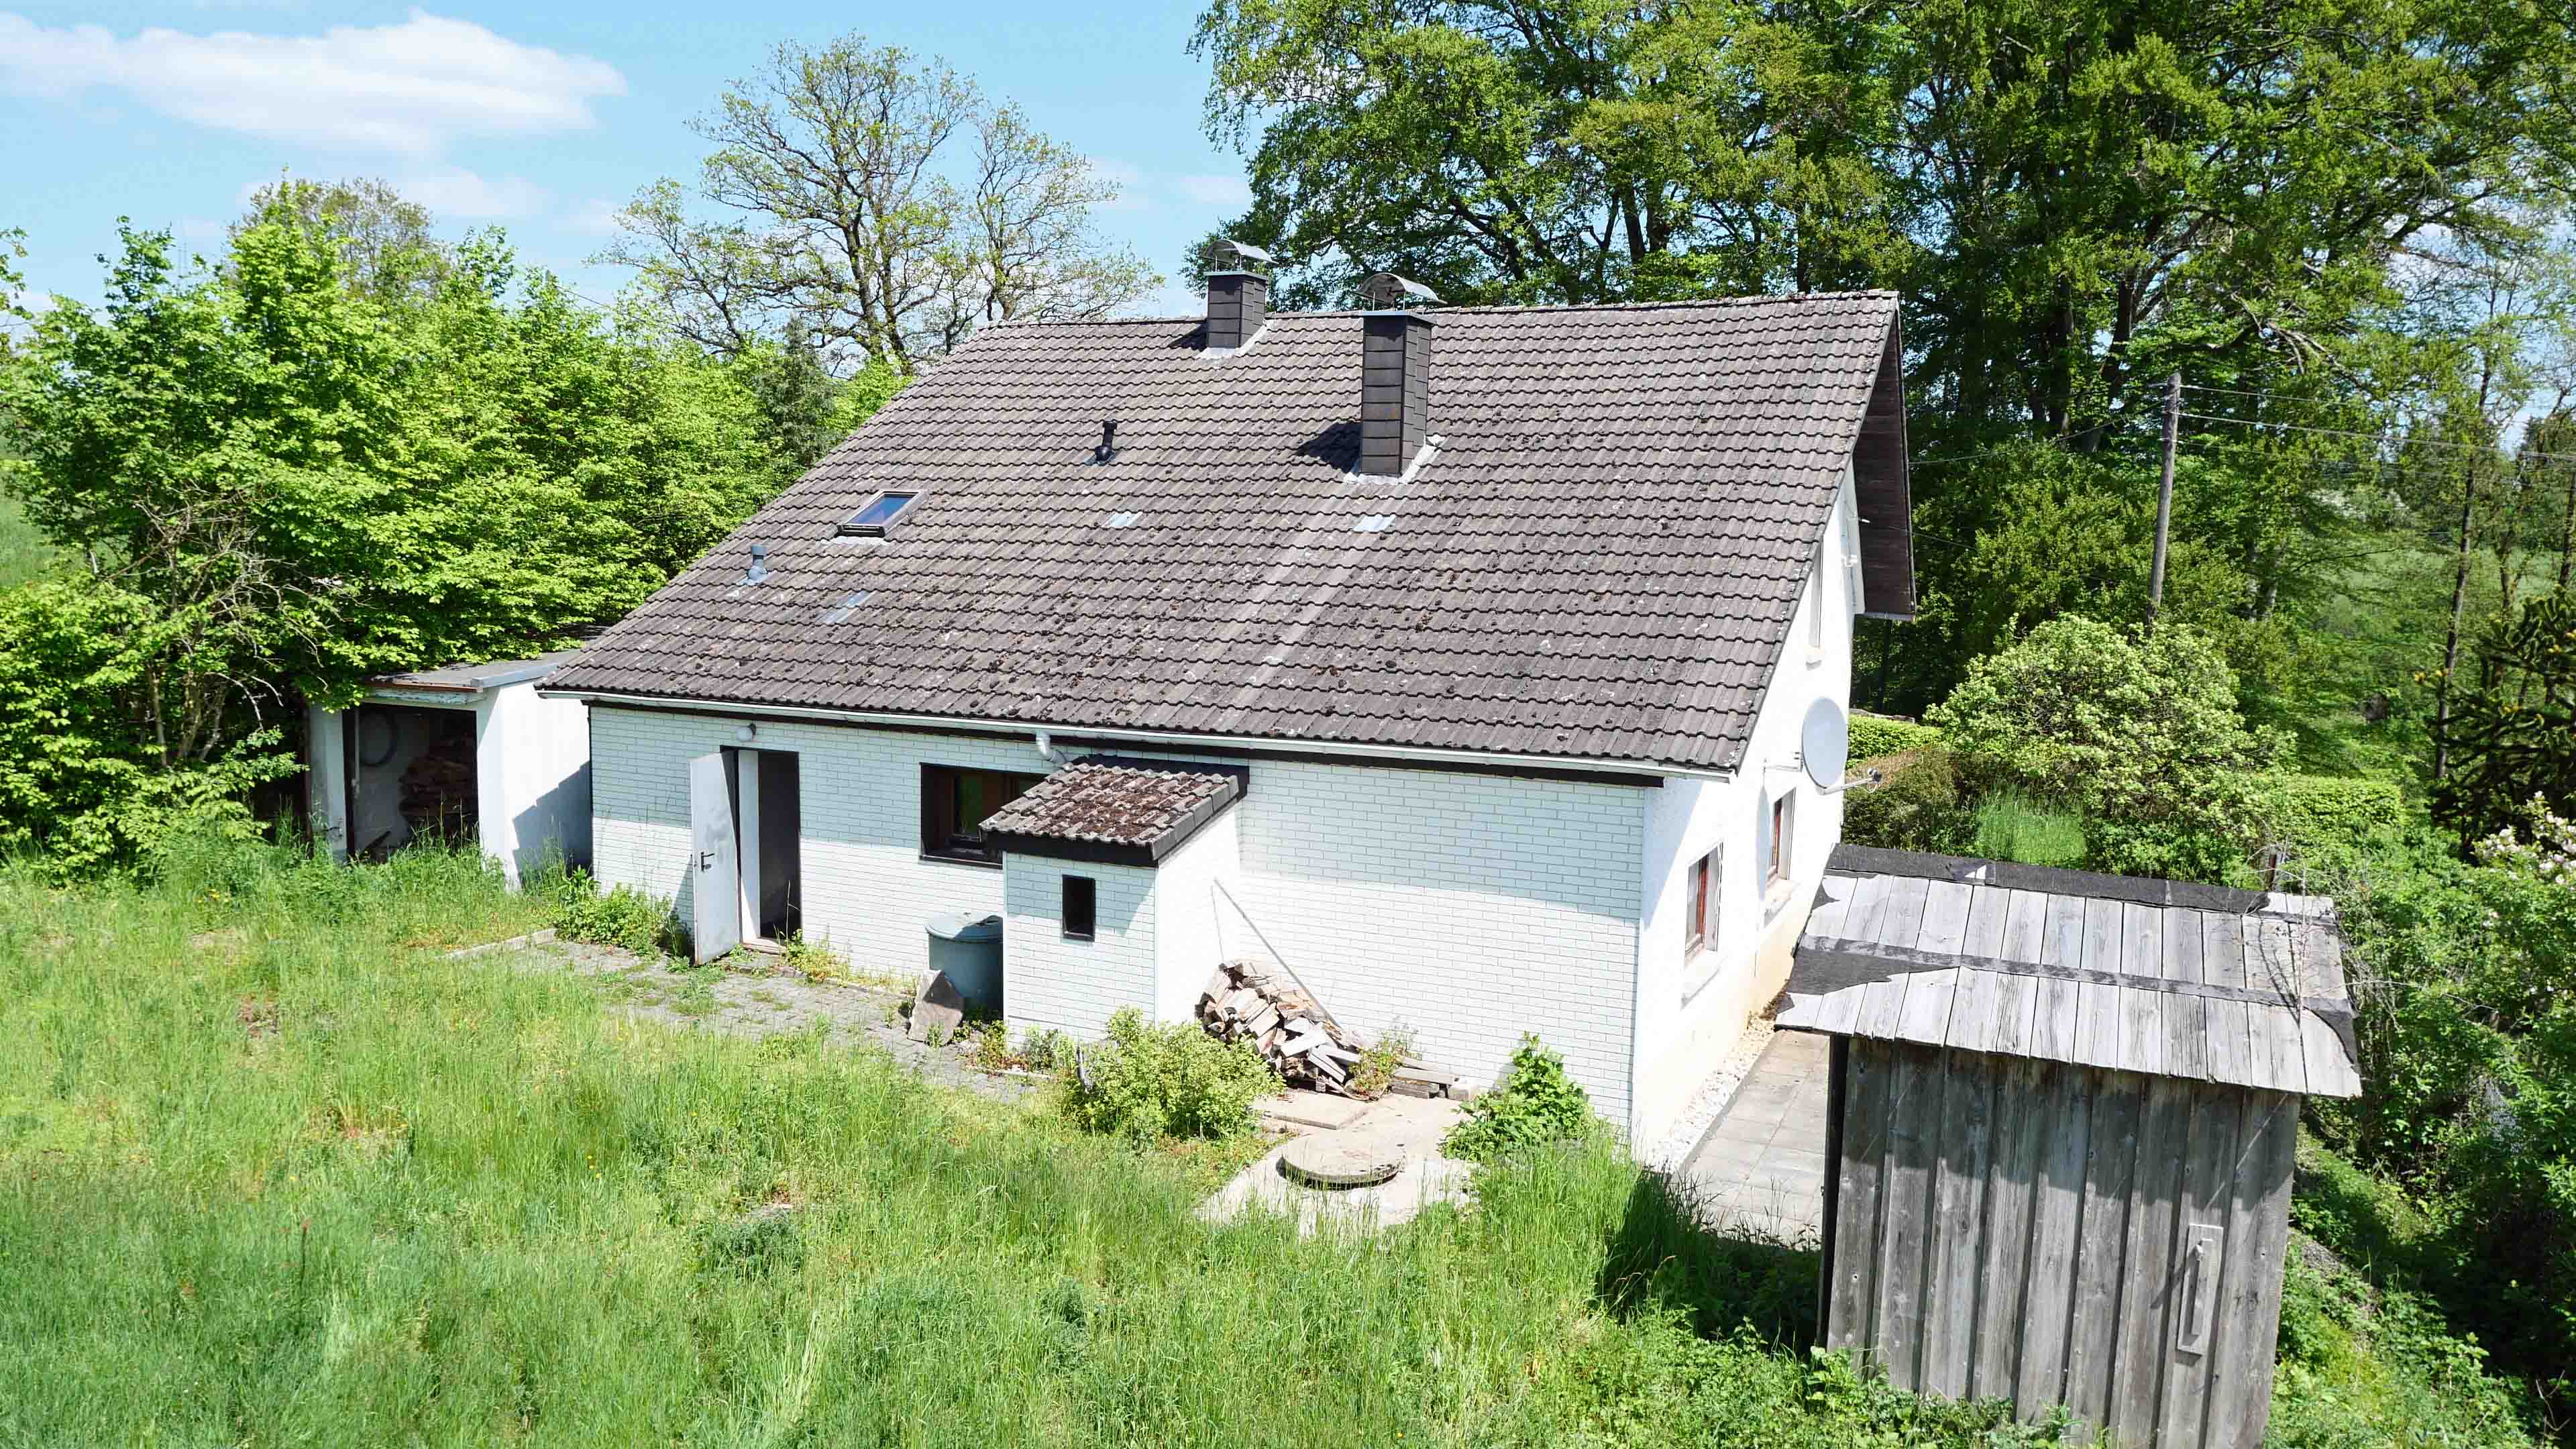 Morsbach-Wittershagen: Massives Wohnhaus mit freiem Blick in die Natur, große Dachfläche geeignet für eine PV-Anlage